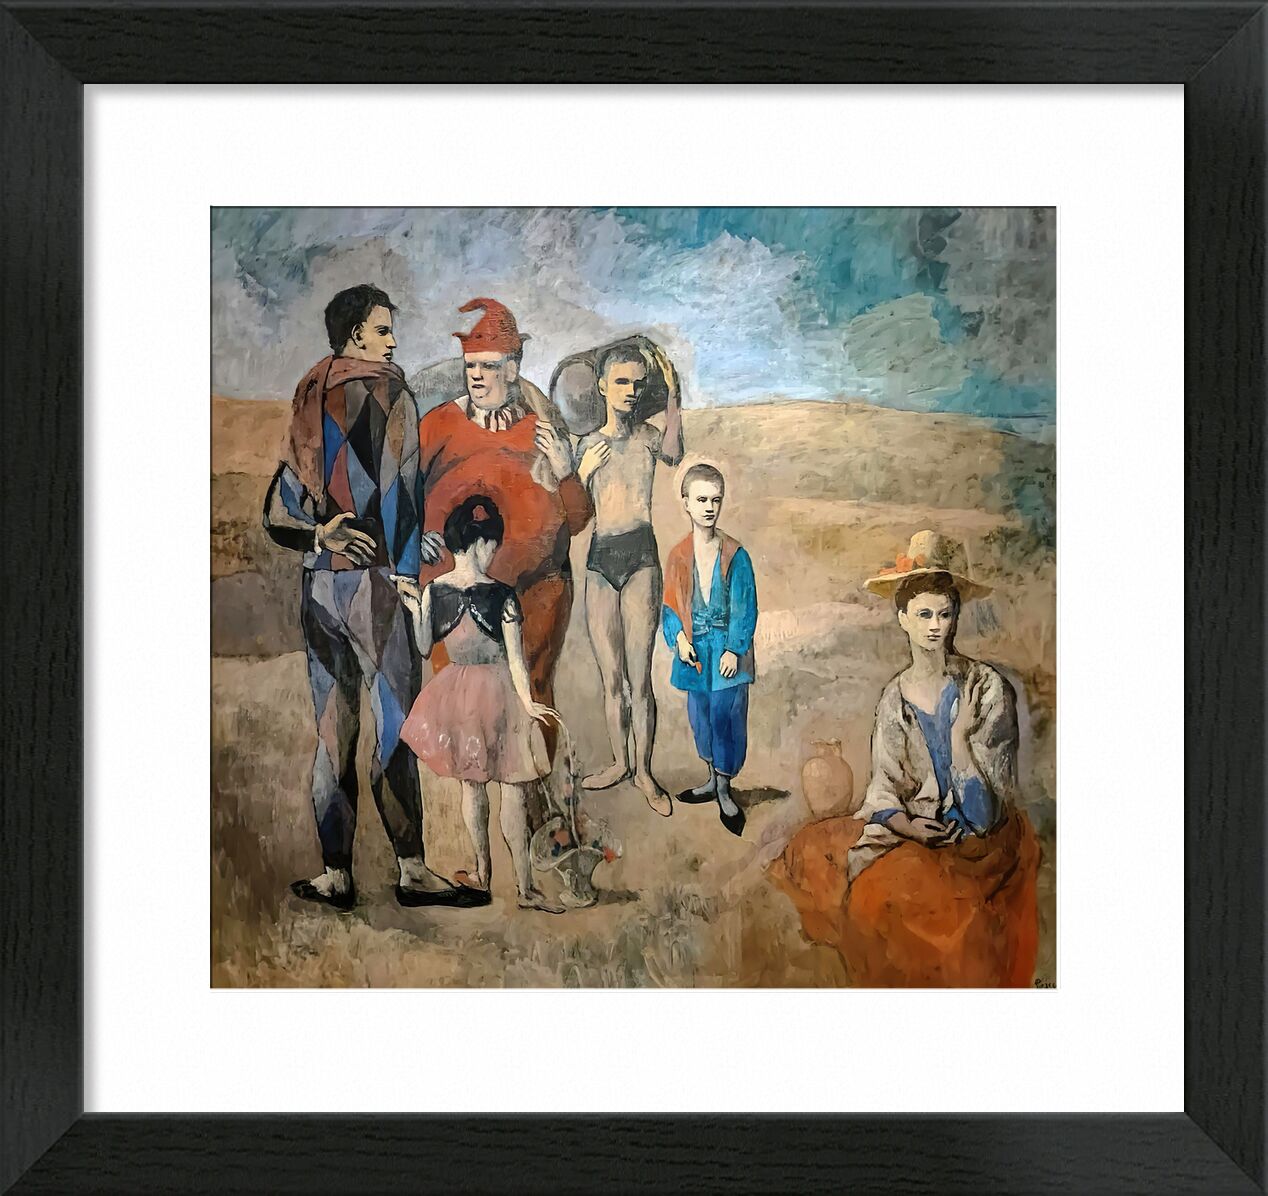 Family of Saltimbanques von Bildende Kunst, Prodi Art, Picasso, Malerei, Familie, Strand, Sommer-, Sand, Akrobaten